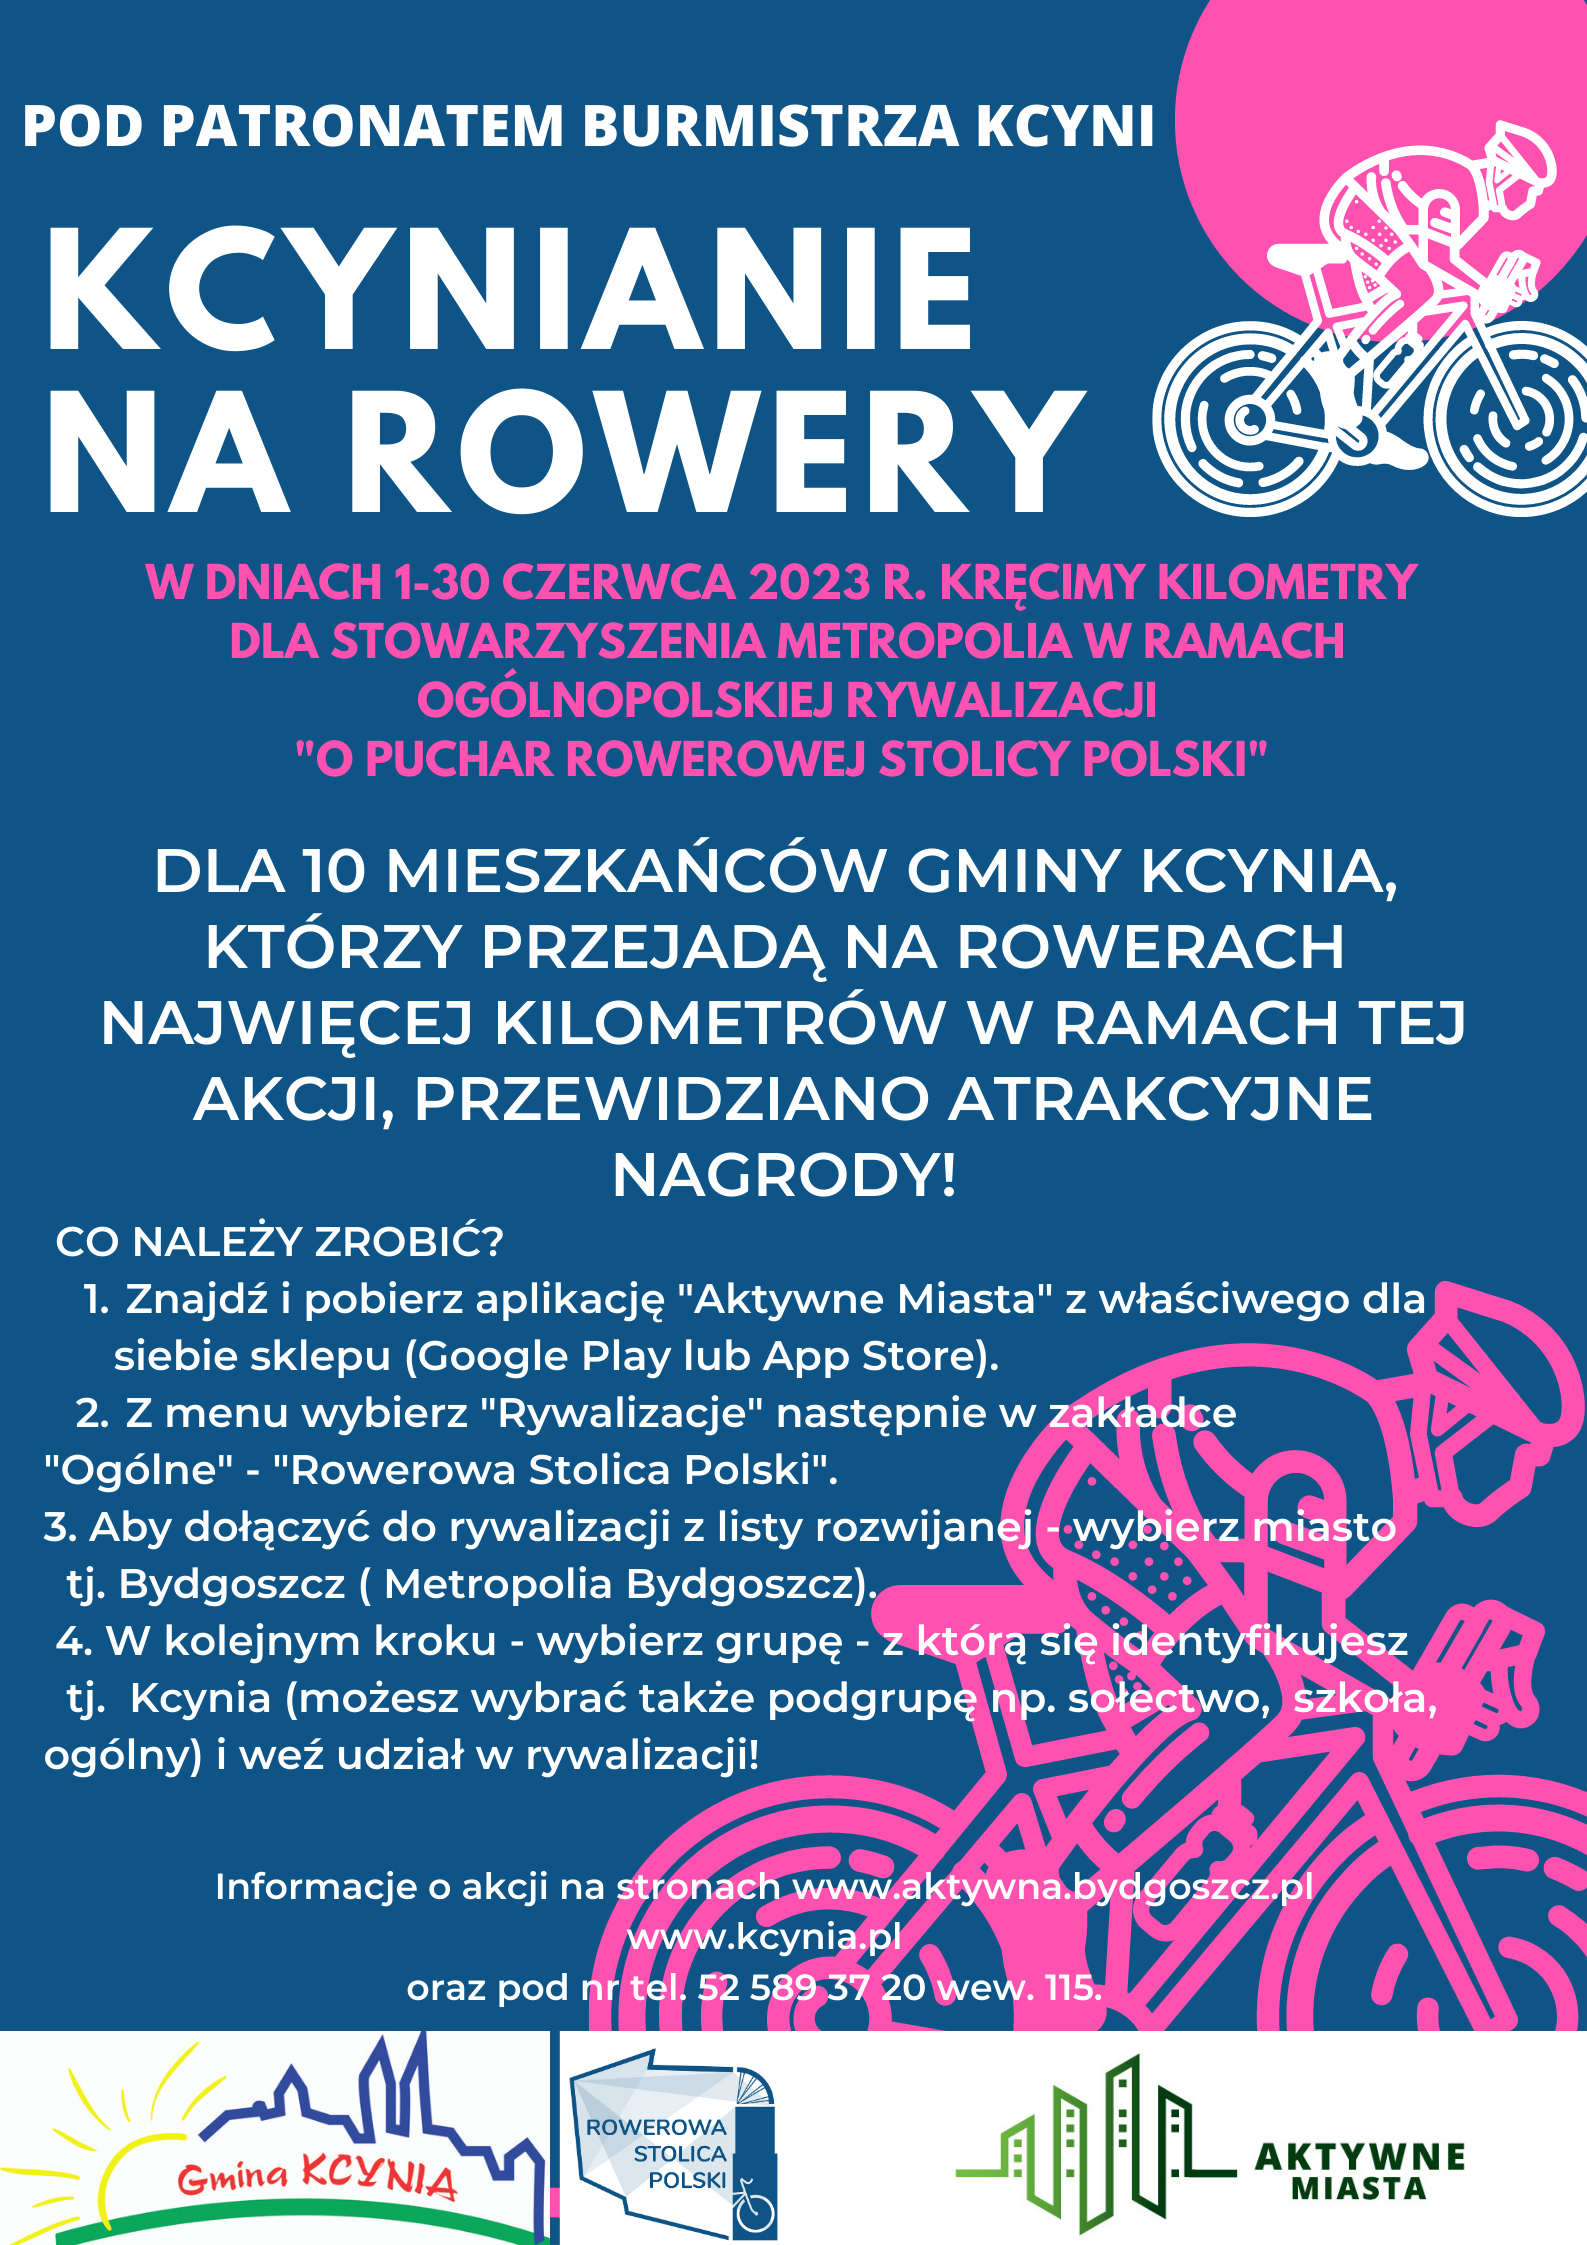 Kopia_kcynianie_na_rowery